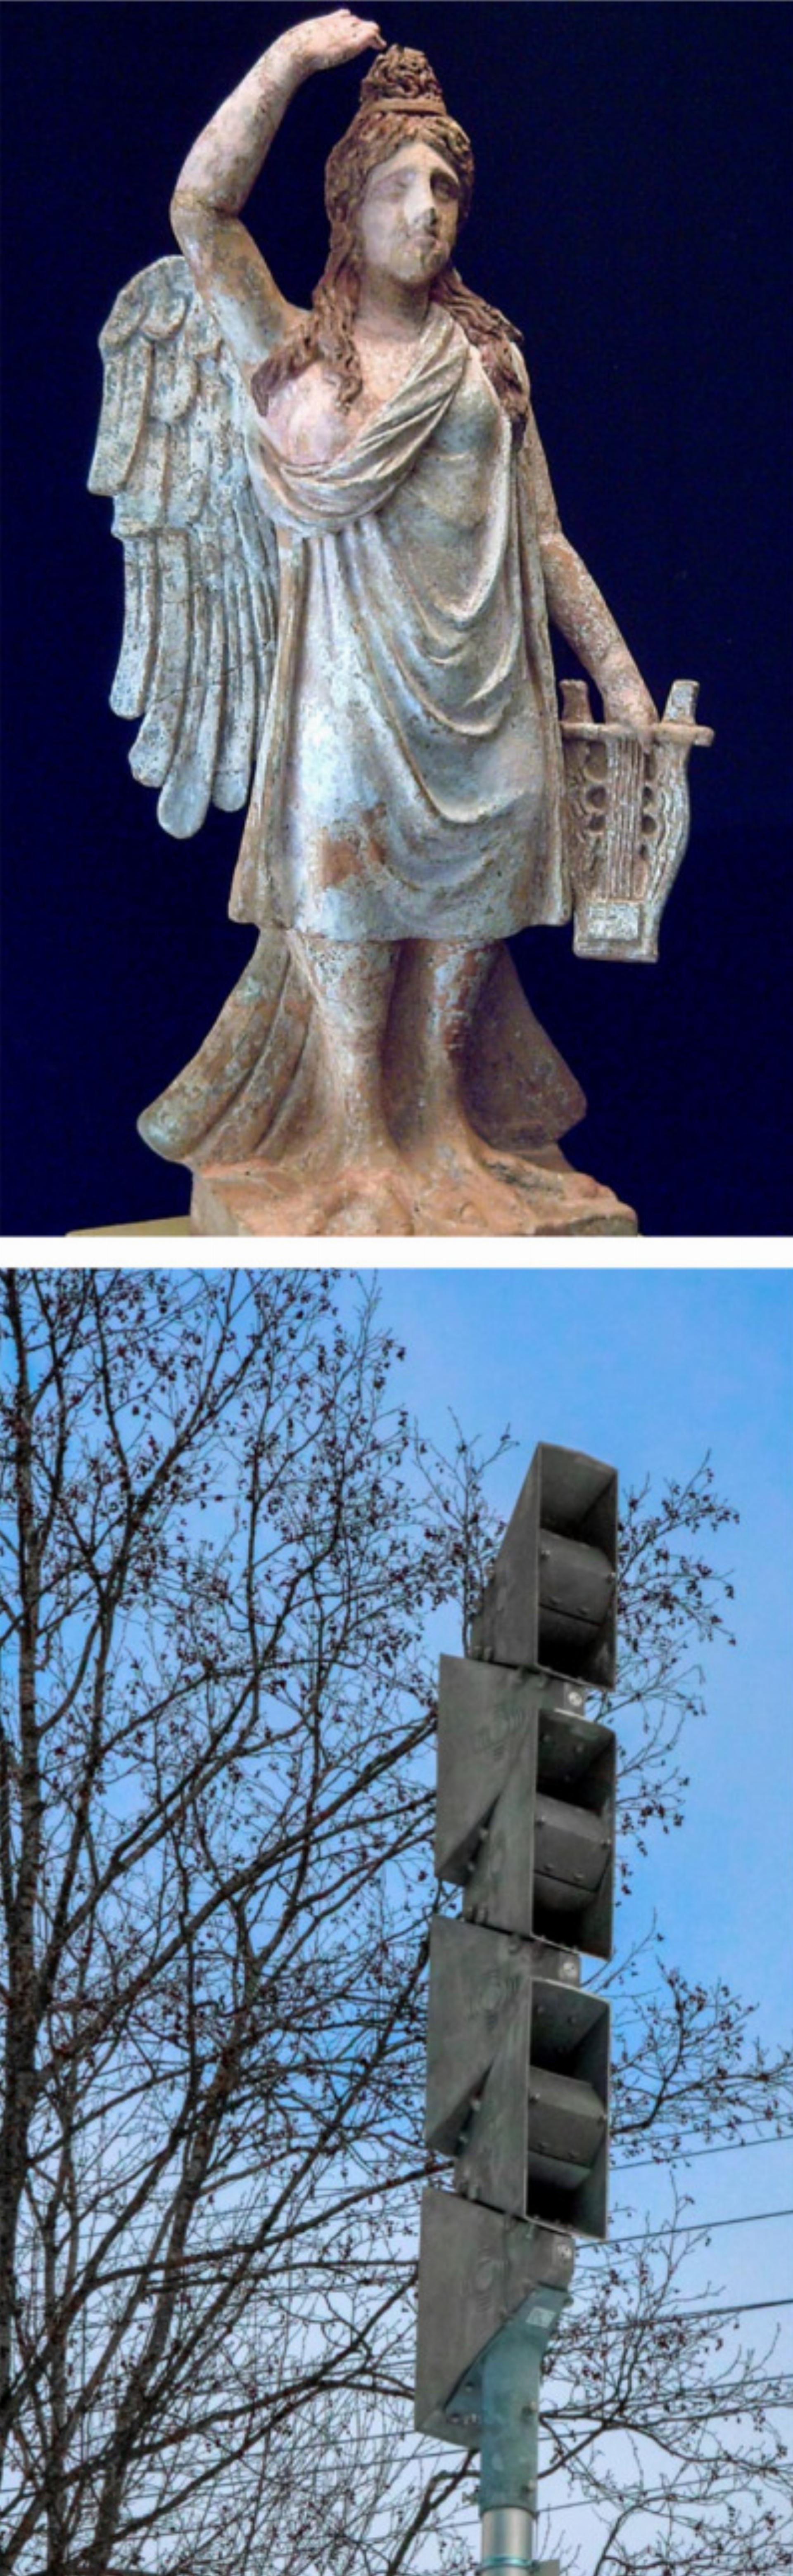 Oben: Statuette einer Sirene, dargestellt mit Beinen, Flügeln, einem Vogelschwanz und einer Zither. Unten: Einen völlig anderen Anblick – und Ton – bietet dagegen die moderne Sirene. BILDER: LUIS GARCÍA / WIKIMEDIA, KATHARINA WITTWER